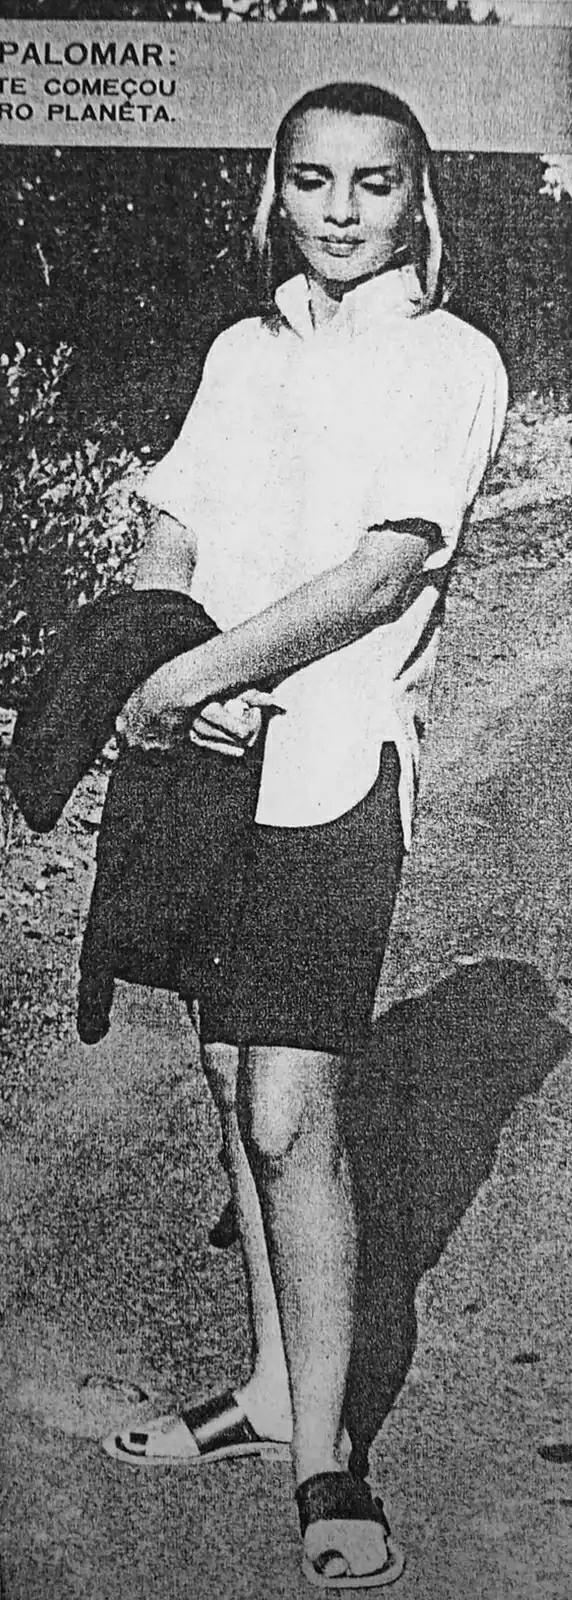 La strana donna nel 1954 Palomar UFO Conference